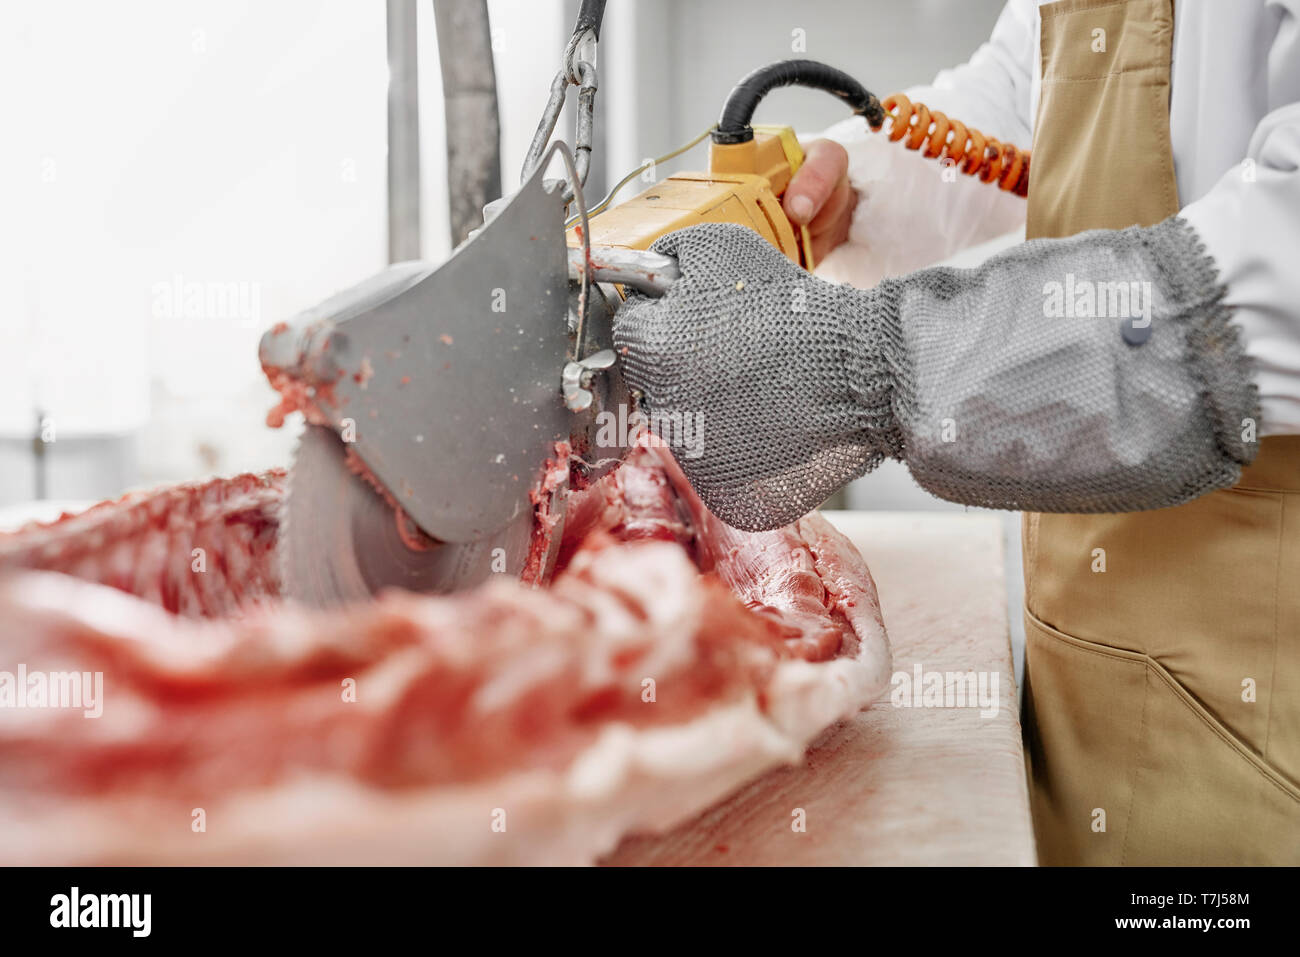 In der Nähe von elektrischen Messer schneiden Wirbel, Knochen von Schweinefleisch Schlachtkörper. Hände von Metzger in Handschuhe slicing Schwein oder Rind mit speziellen Gerät. Arbeiter in weiße Uniform, Handschuhe und braune Schürze. Stockfoto